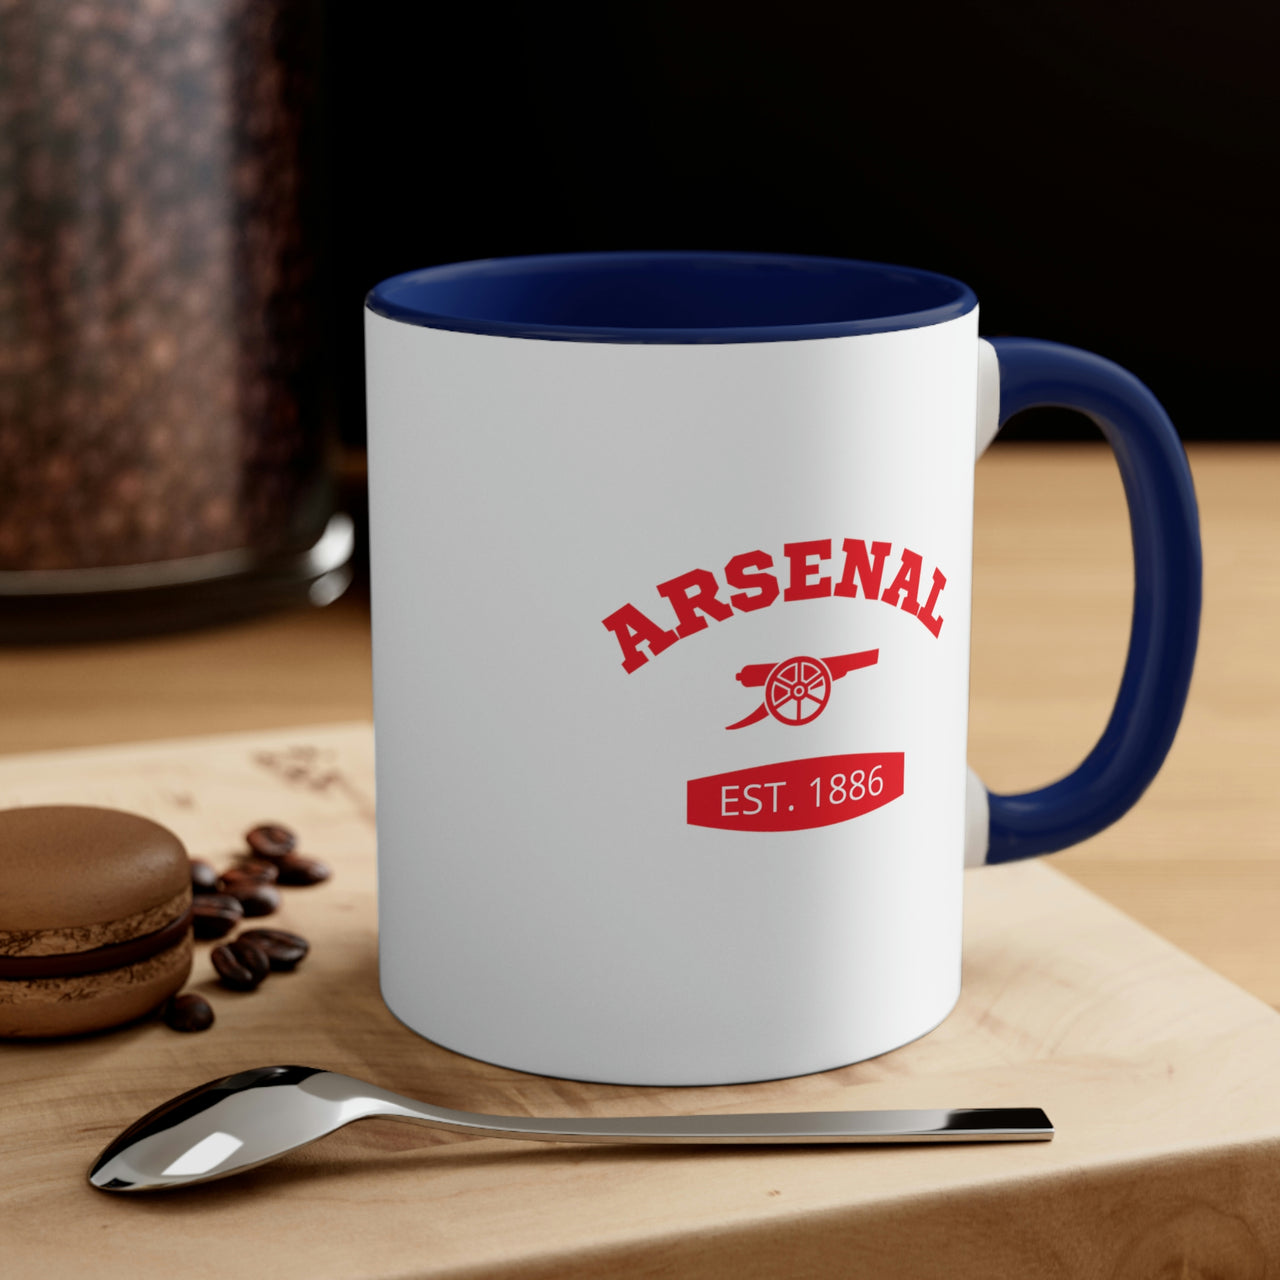 Arsenal Coffee Mug, 11oz